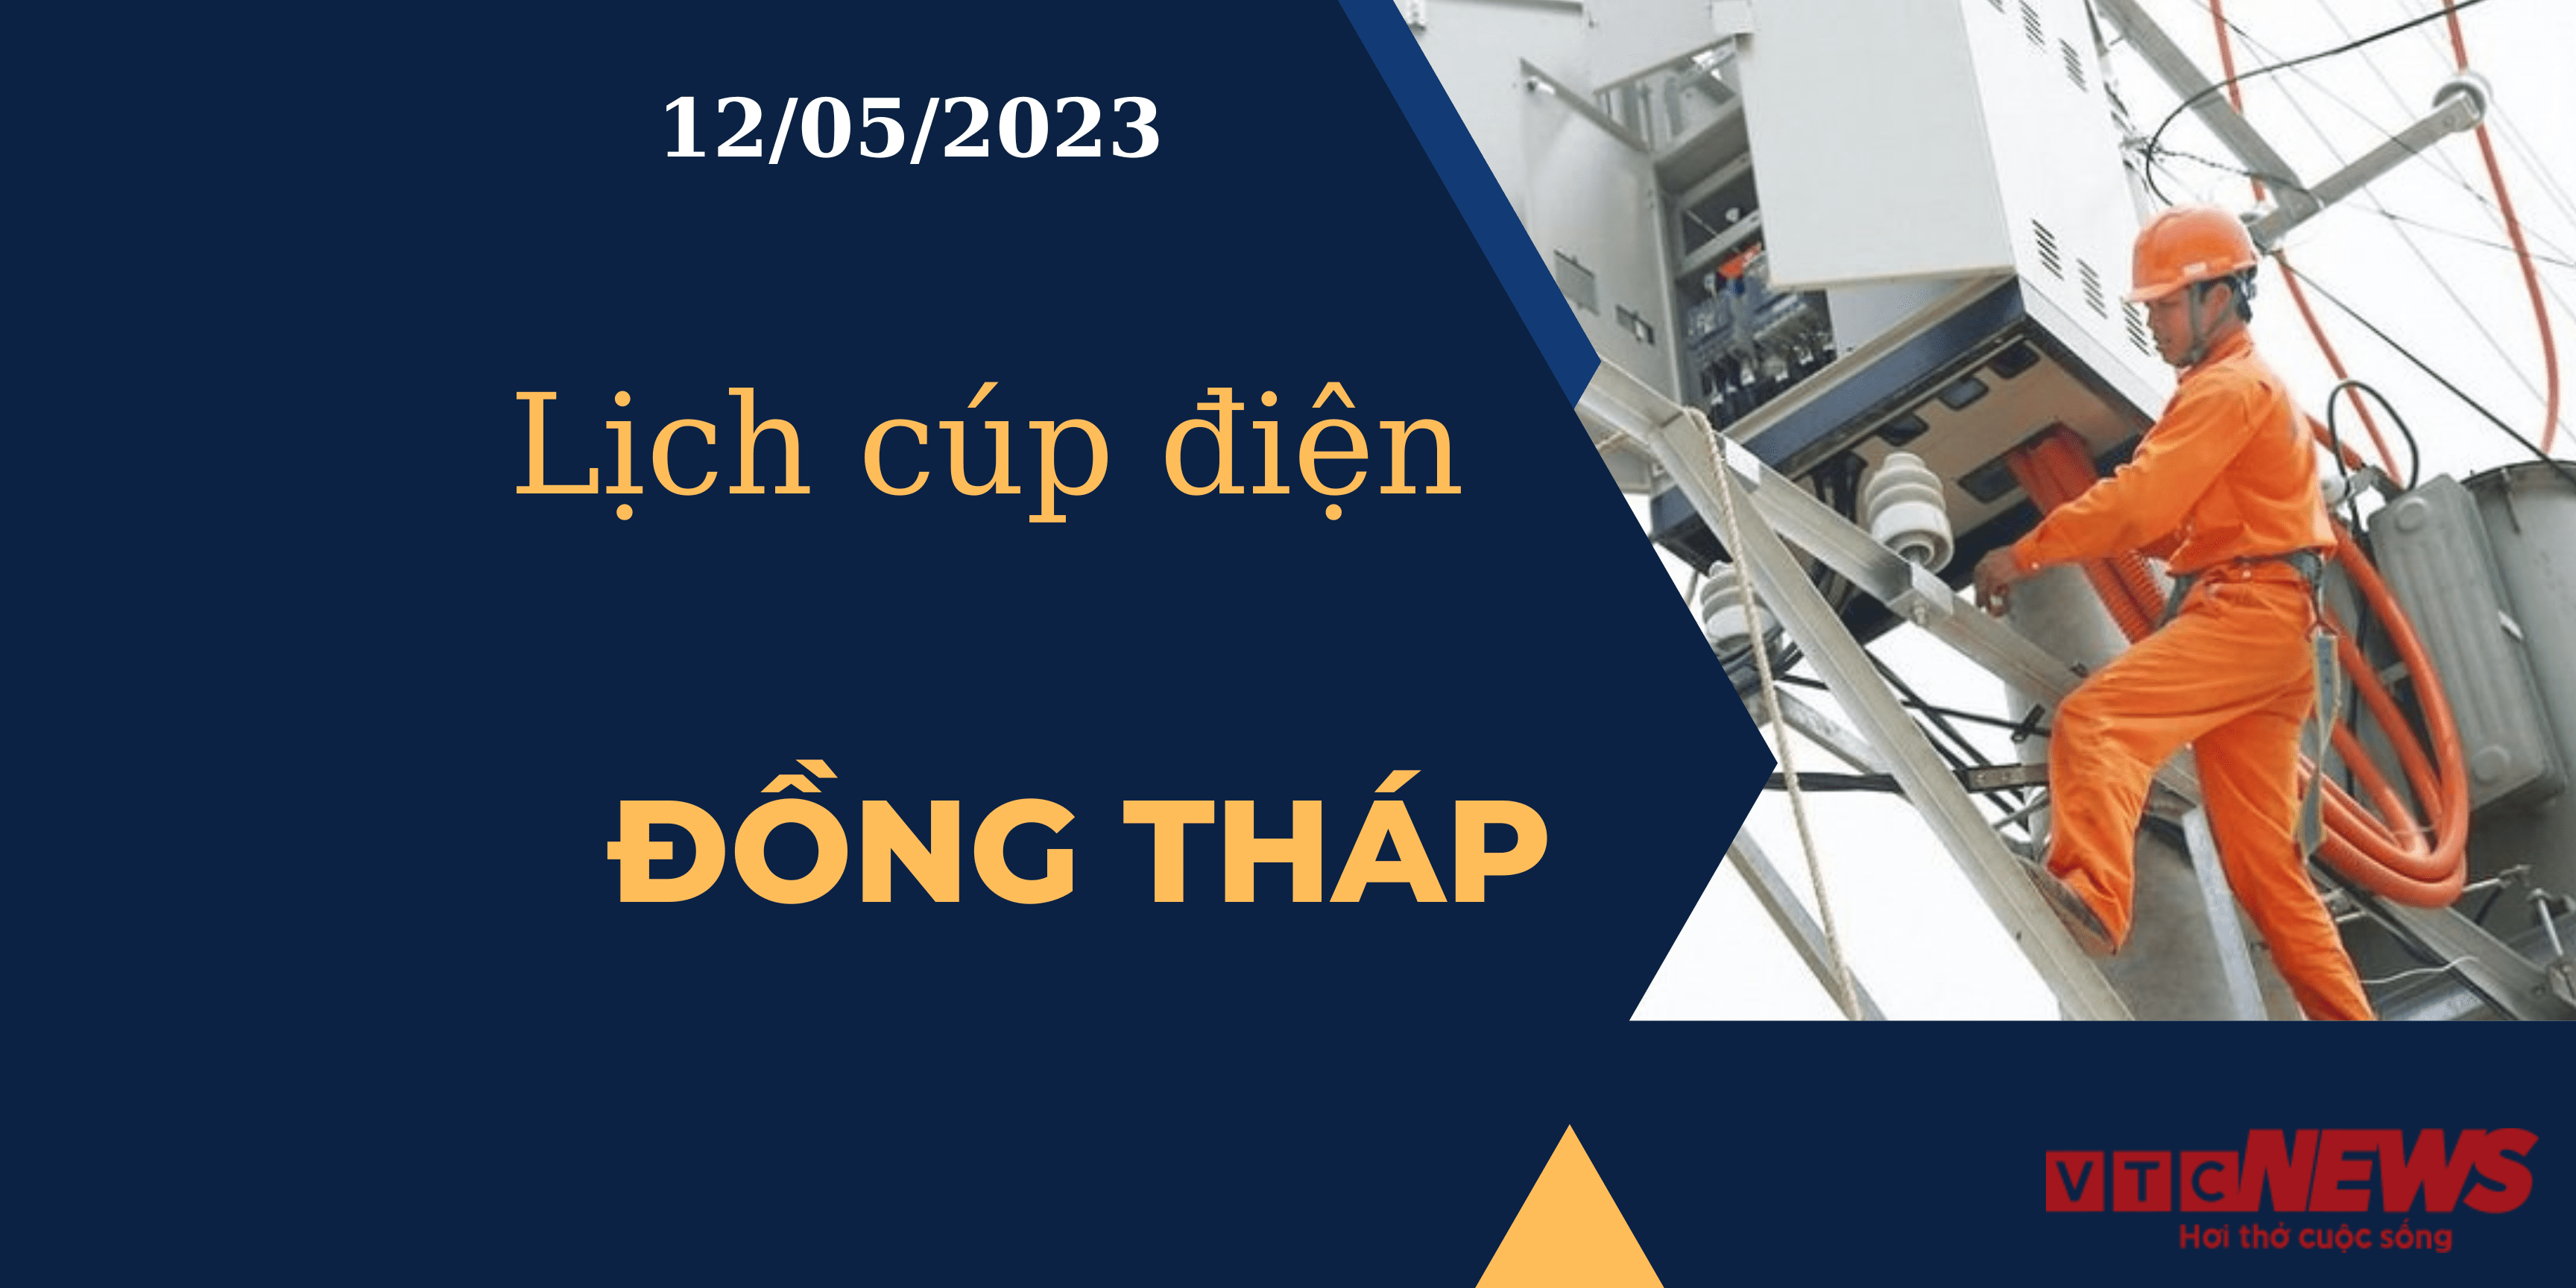 Lịch cúp điện hôm nay ngày 12/05/2023 tại Đồng Tháp - 1